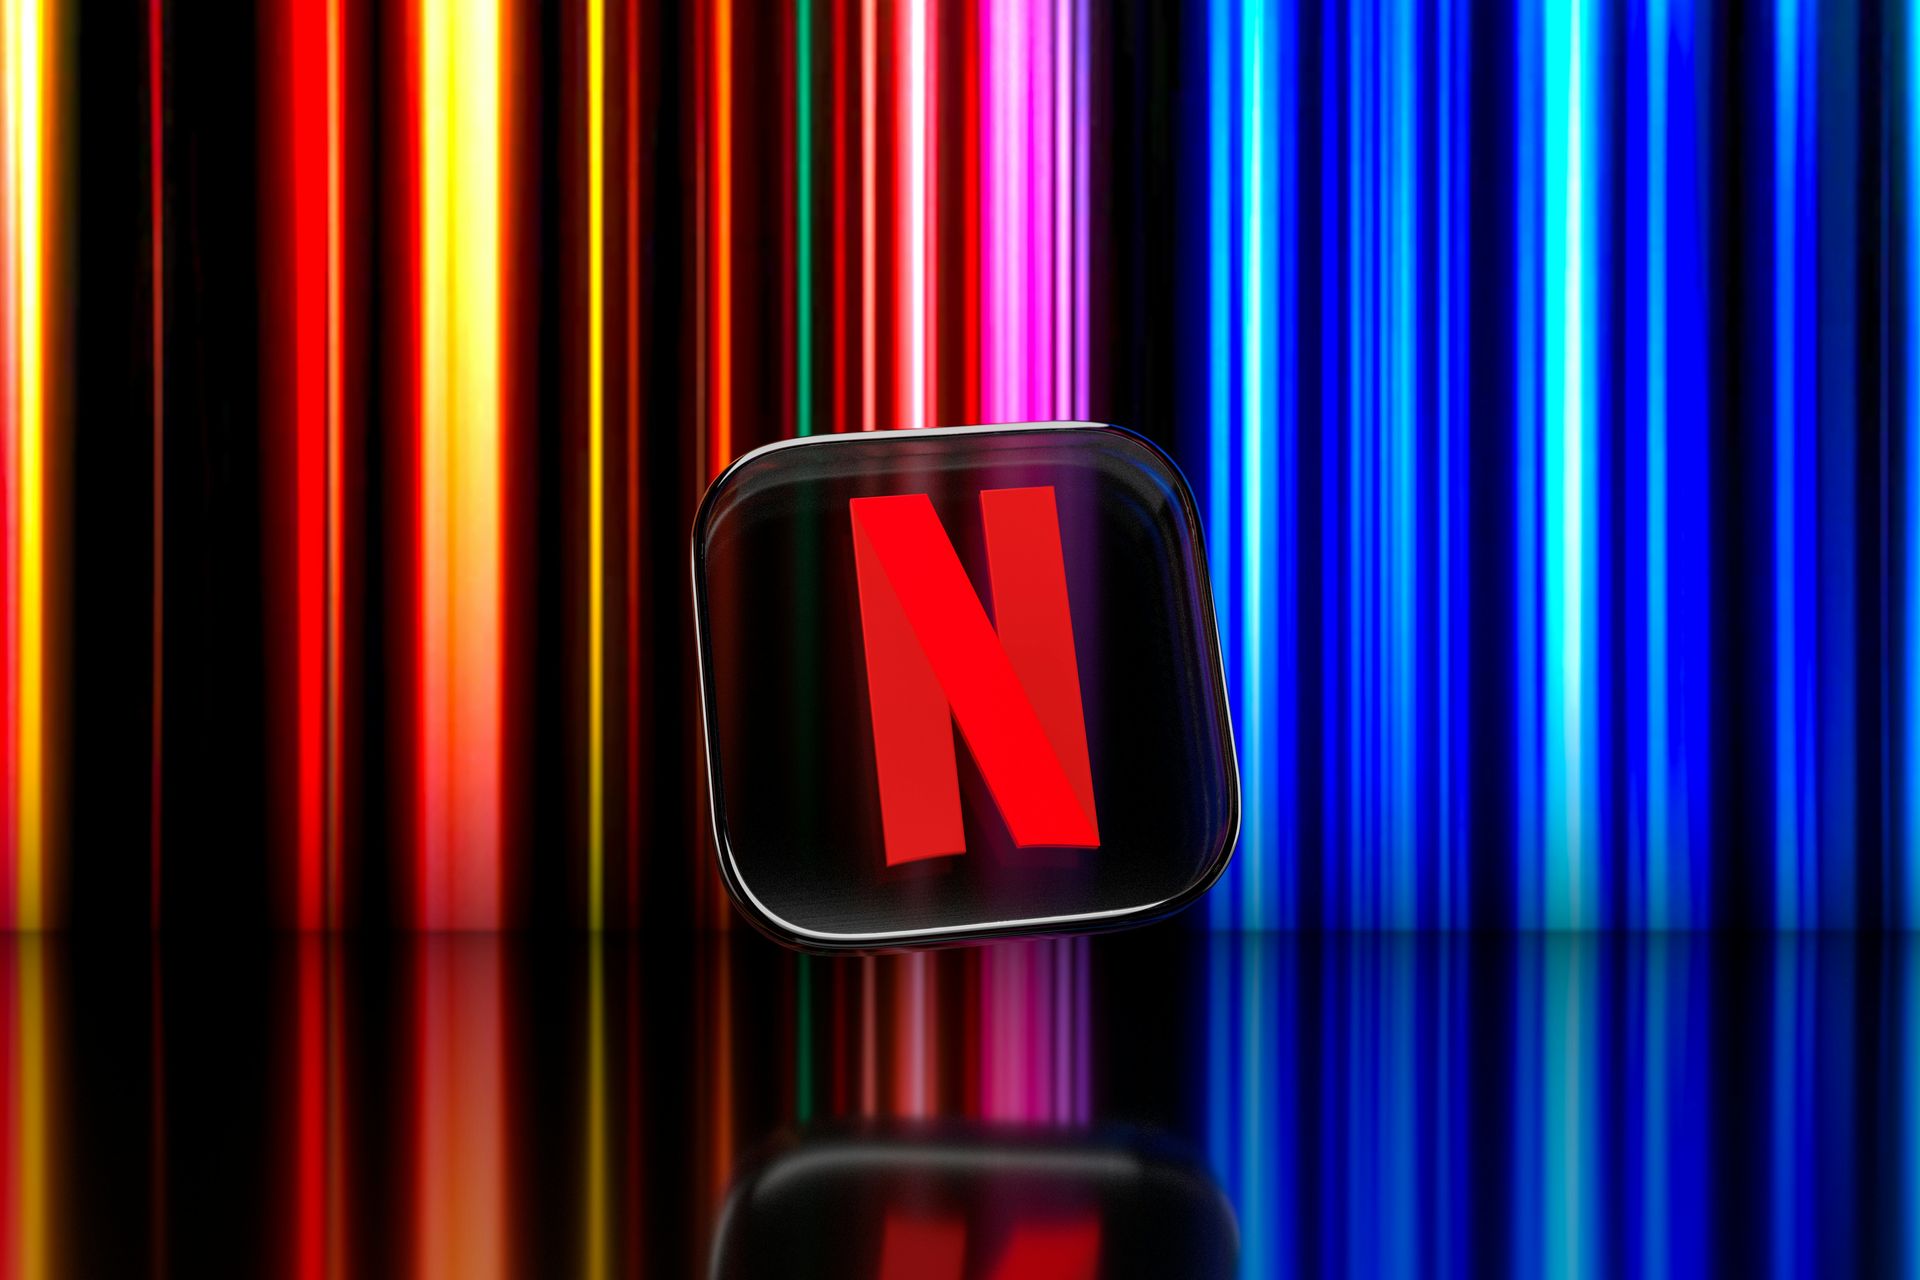 Netflix-cloudgames: een voorproefje zonder wachten